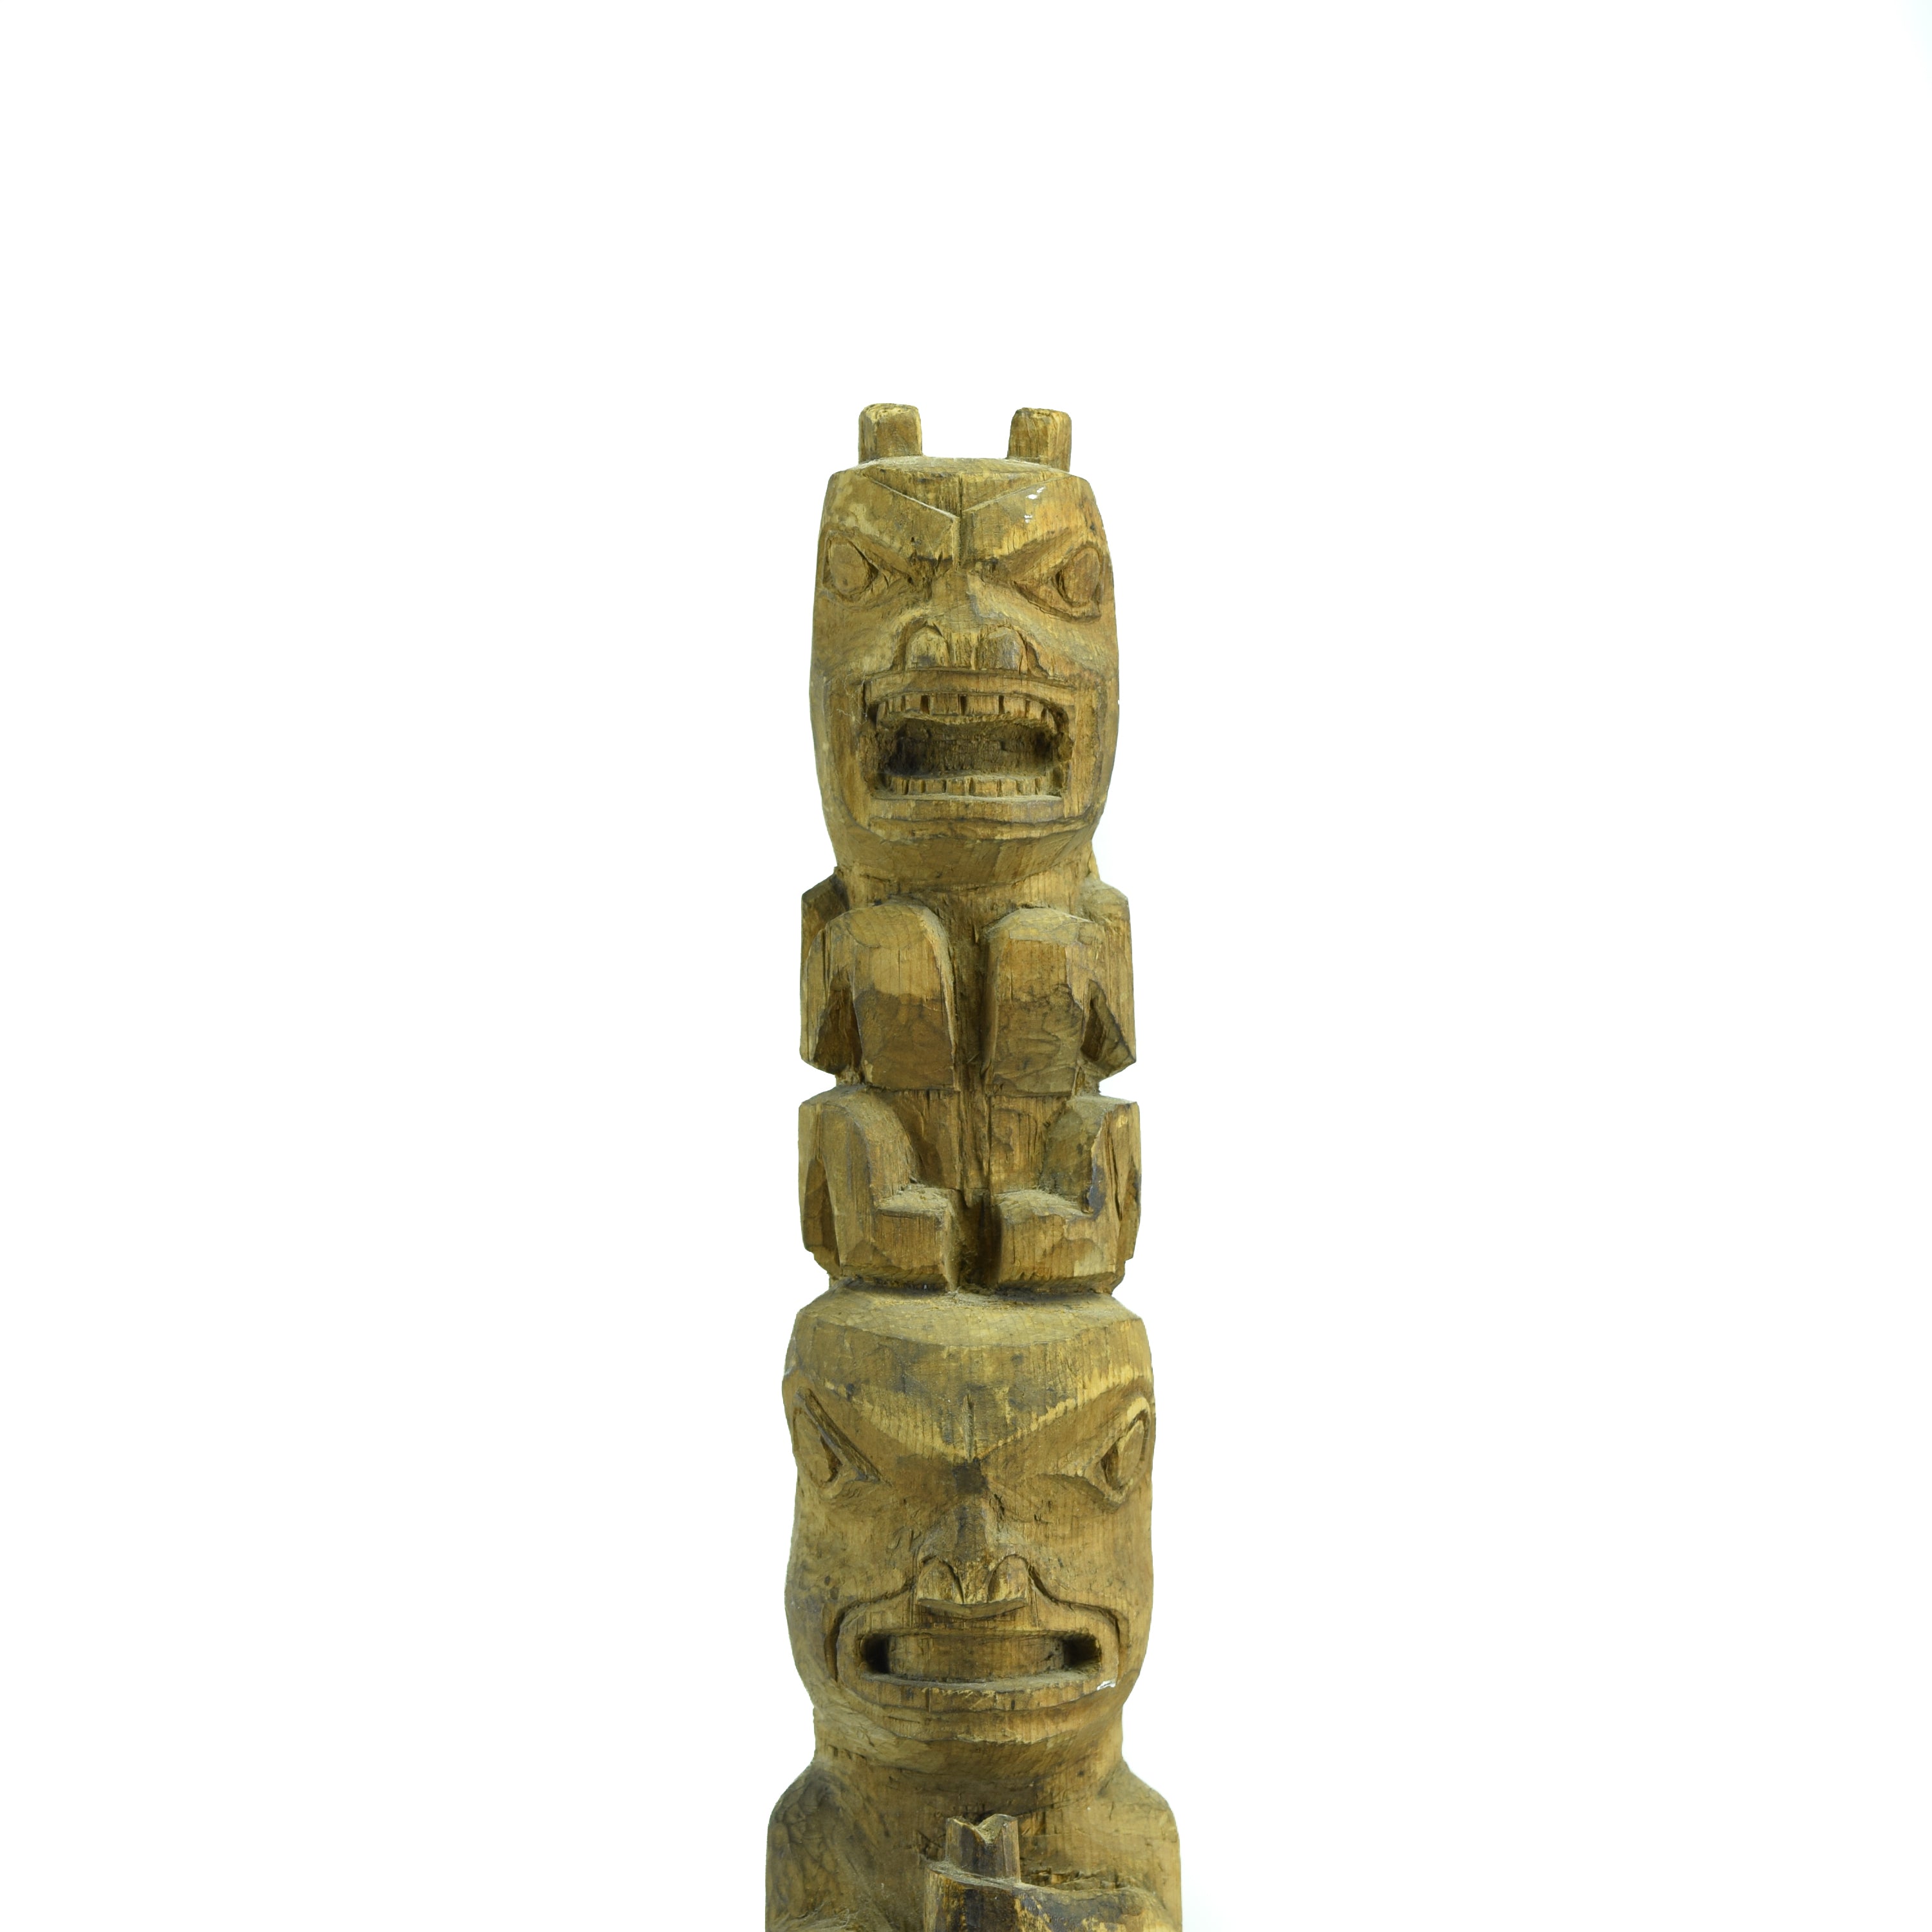 Multifigure Tlingit Totem